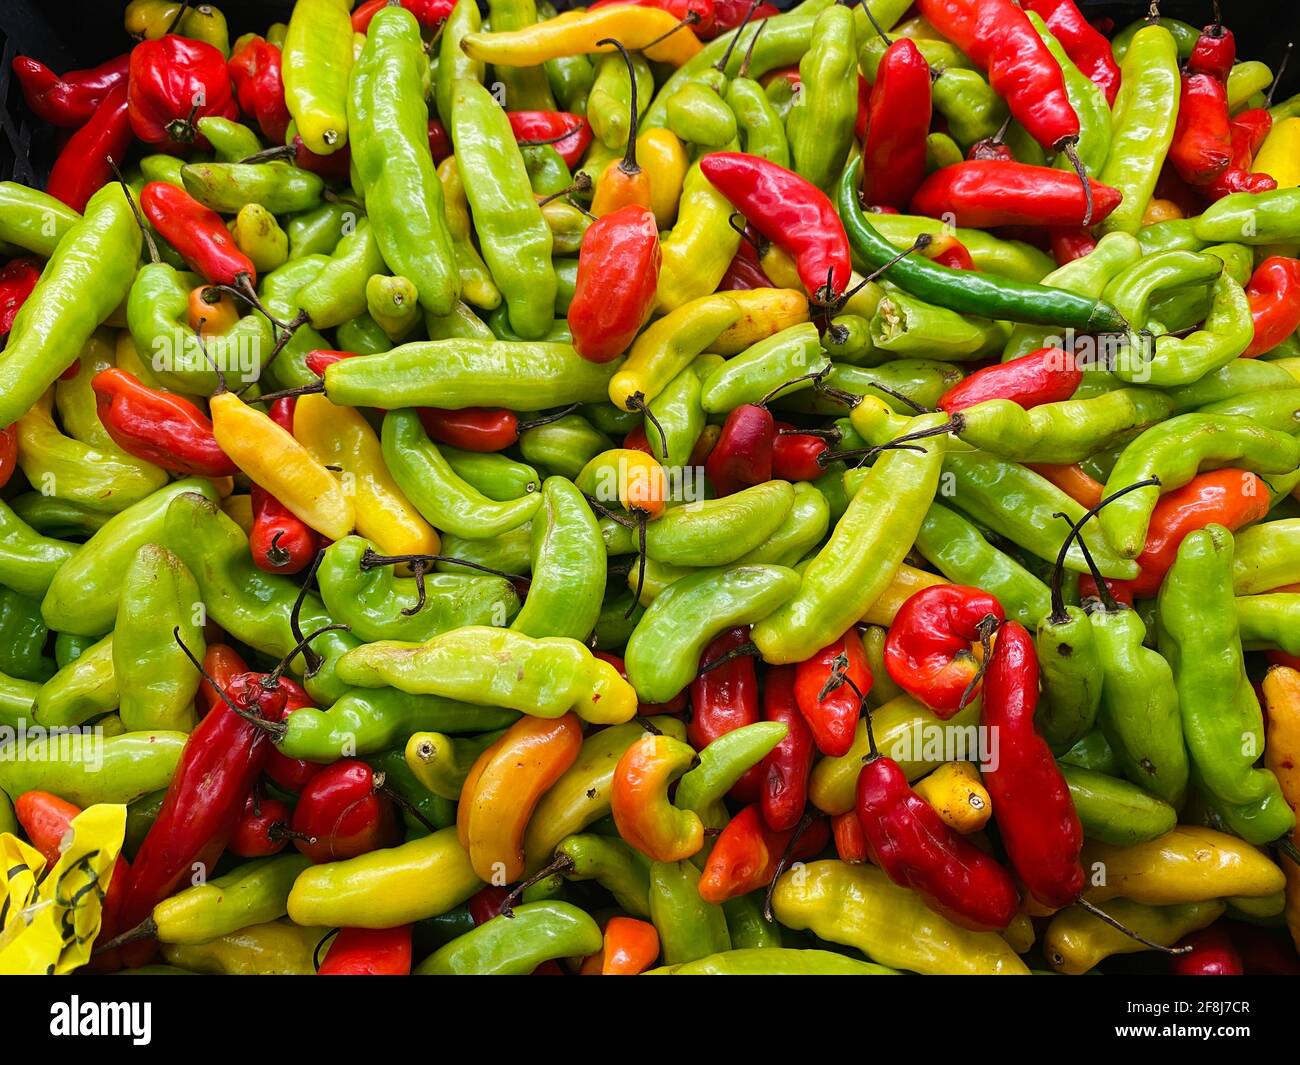 Mezcla colorida de chiles rojos y verdes utilizados en preparar comida picante caliente Foto de stock